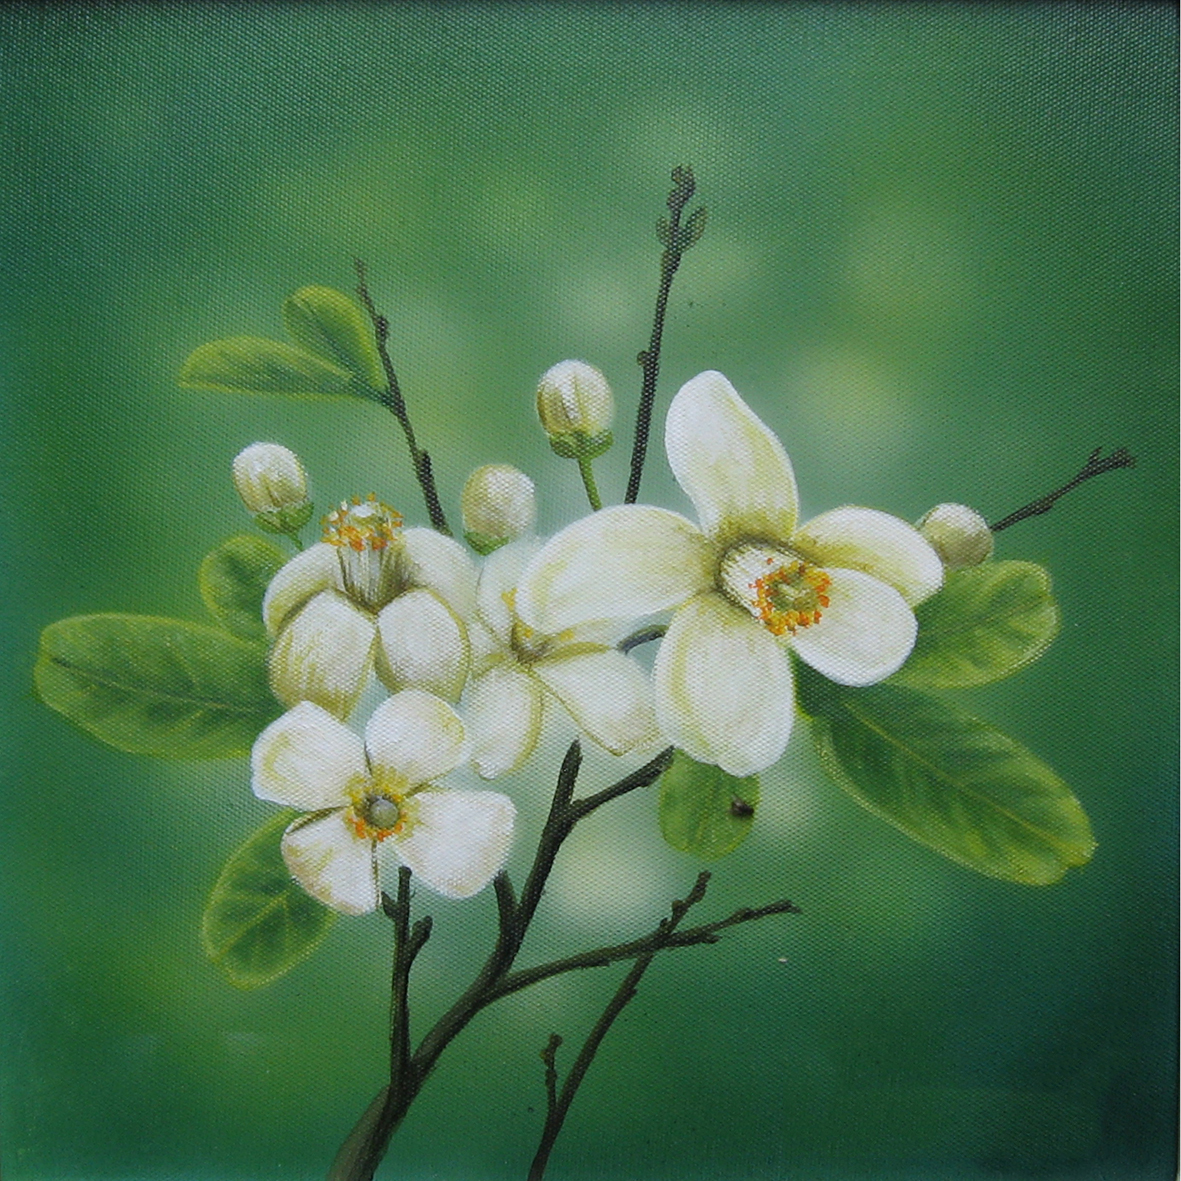 Tổng hợp những hình ảnh đẹp nhất về mùi hoa bưởi tháng ba - [Kích thước hình ảnh: 1181x1181 px]